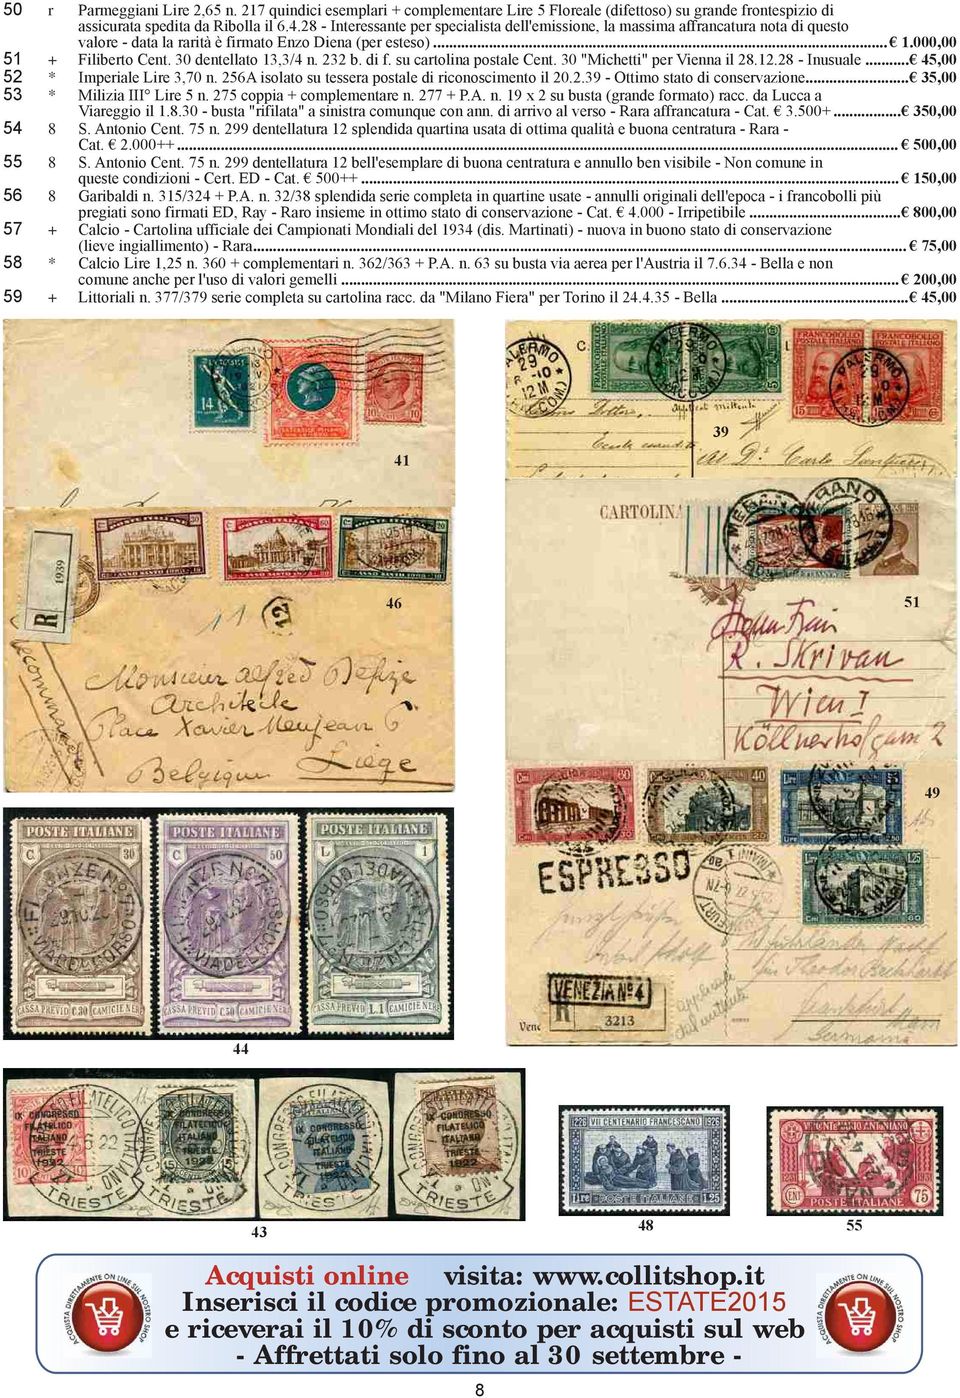 30 dentellato 13,3/4 n. 232 b. di f. su cartolina postale Cent. 30 "Michetti" per Vienna il 28.12.28 - Inusuale... 45,00 52 * Imperiale Lire 3,70 n.